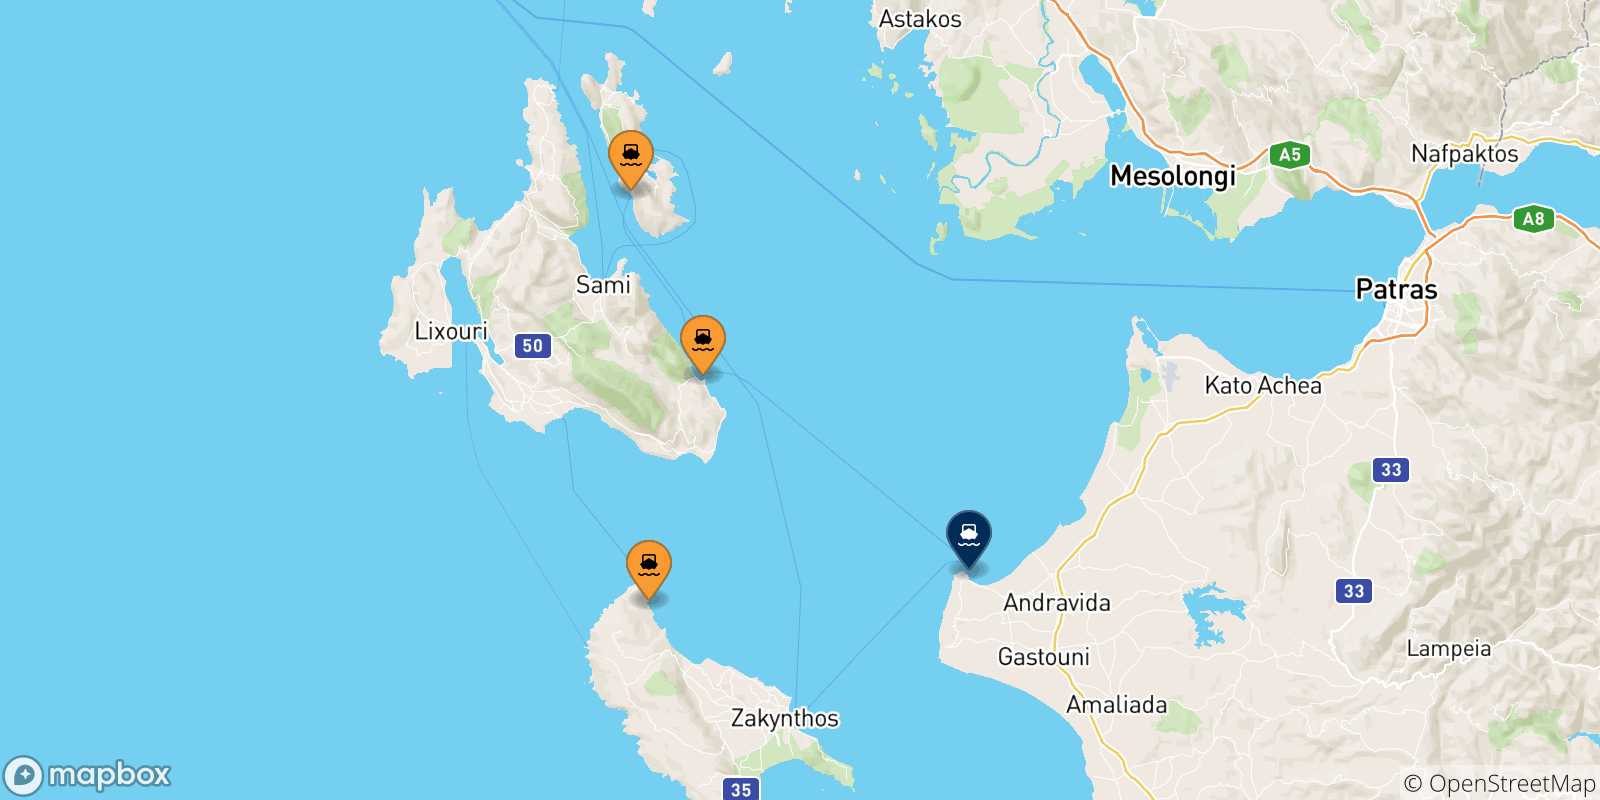 Mappa delle possibili rotte tra le Isole Ionie e Killini